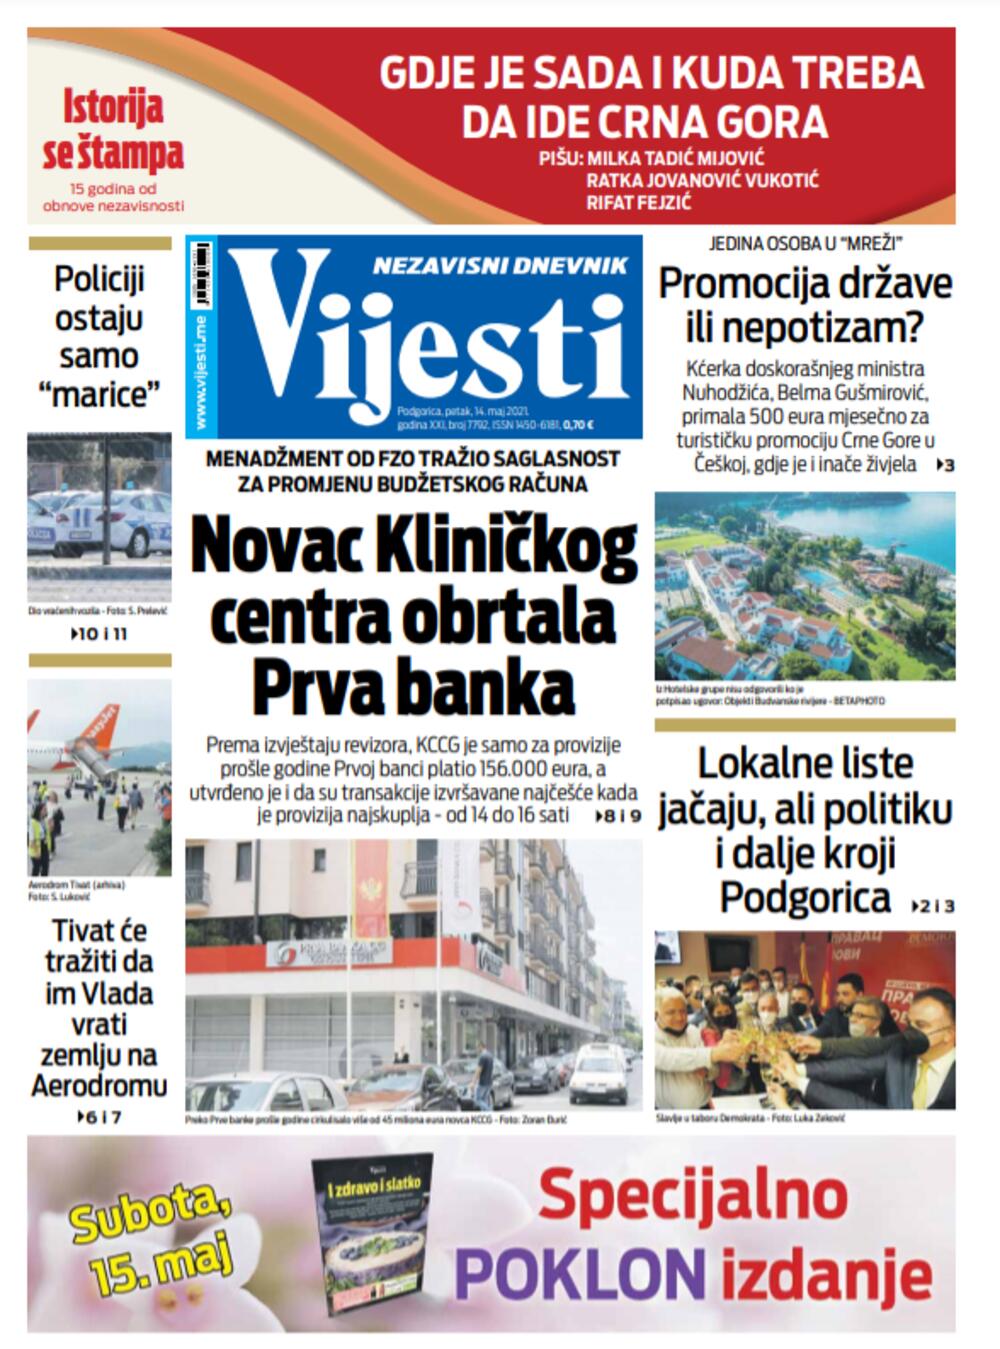 Naslovna strana "Vijesti" za petak 14. maj 2021. godine, Foto: Vijesti